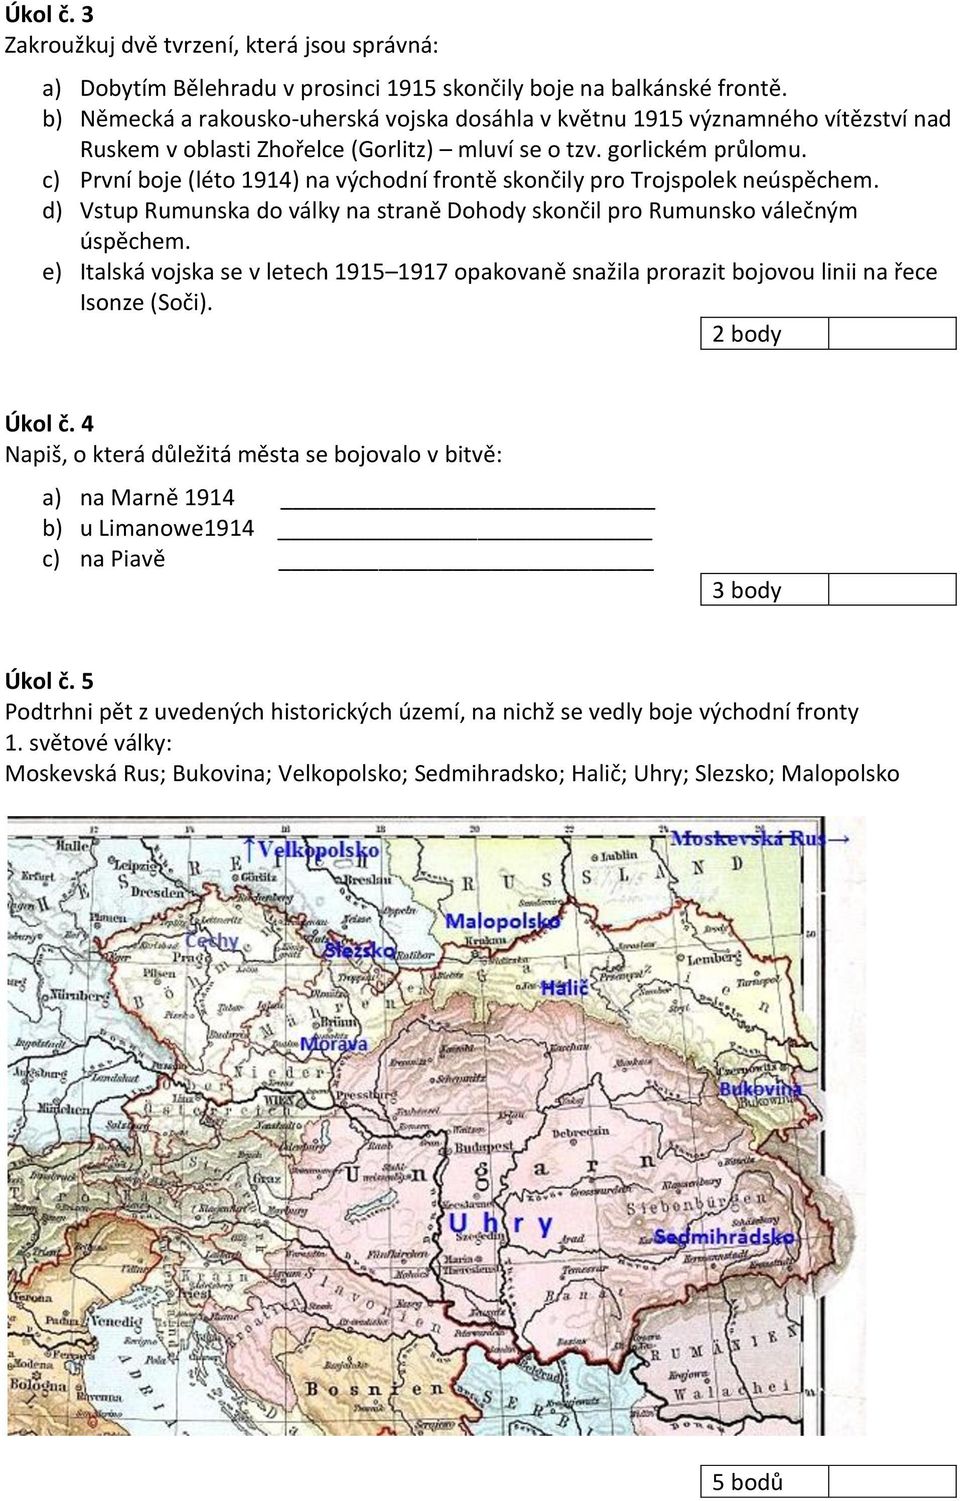 c) První boje (léto 1914) na východní frontě skončily pro Trojspolek neúspěchem. d) Vstup Rumunska do války na straně Dohody skončil pro Rumunsko válečným úspěchem.